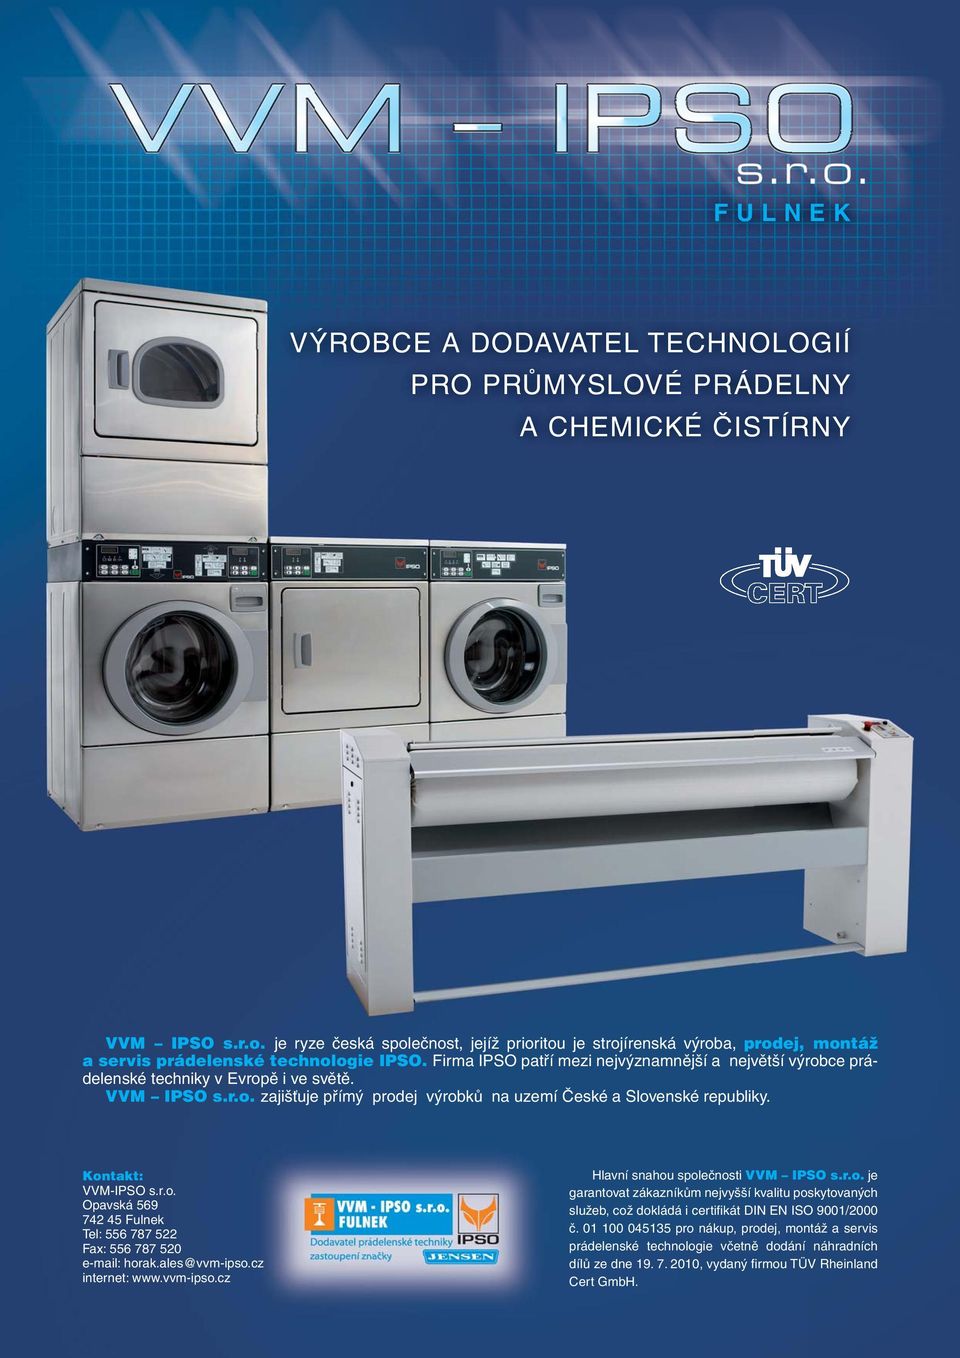 Firma IPSO patří mezi nejvýznamnější a největší výrobce prádelenské techniky v Evropě i ve světě. VVM IPSO s.r.o. zajišťuje přímý prodej výrobků na uzemí České a Slovenské republiky.